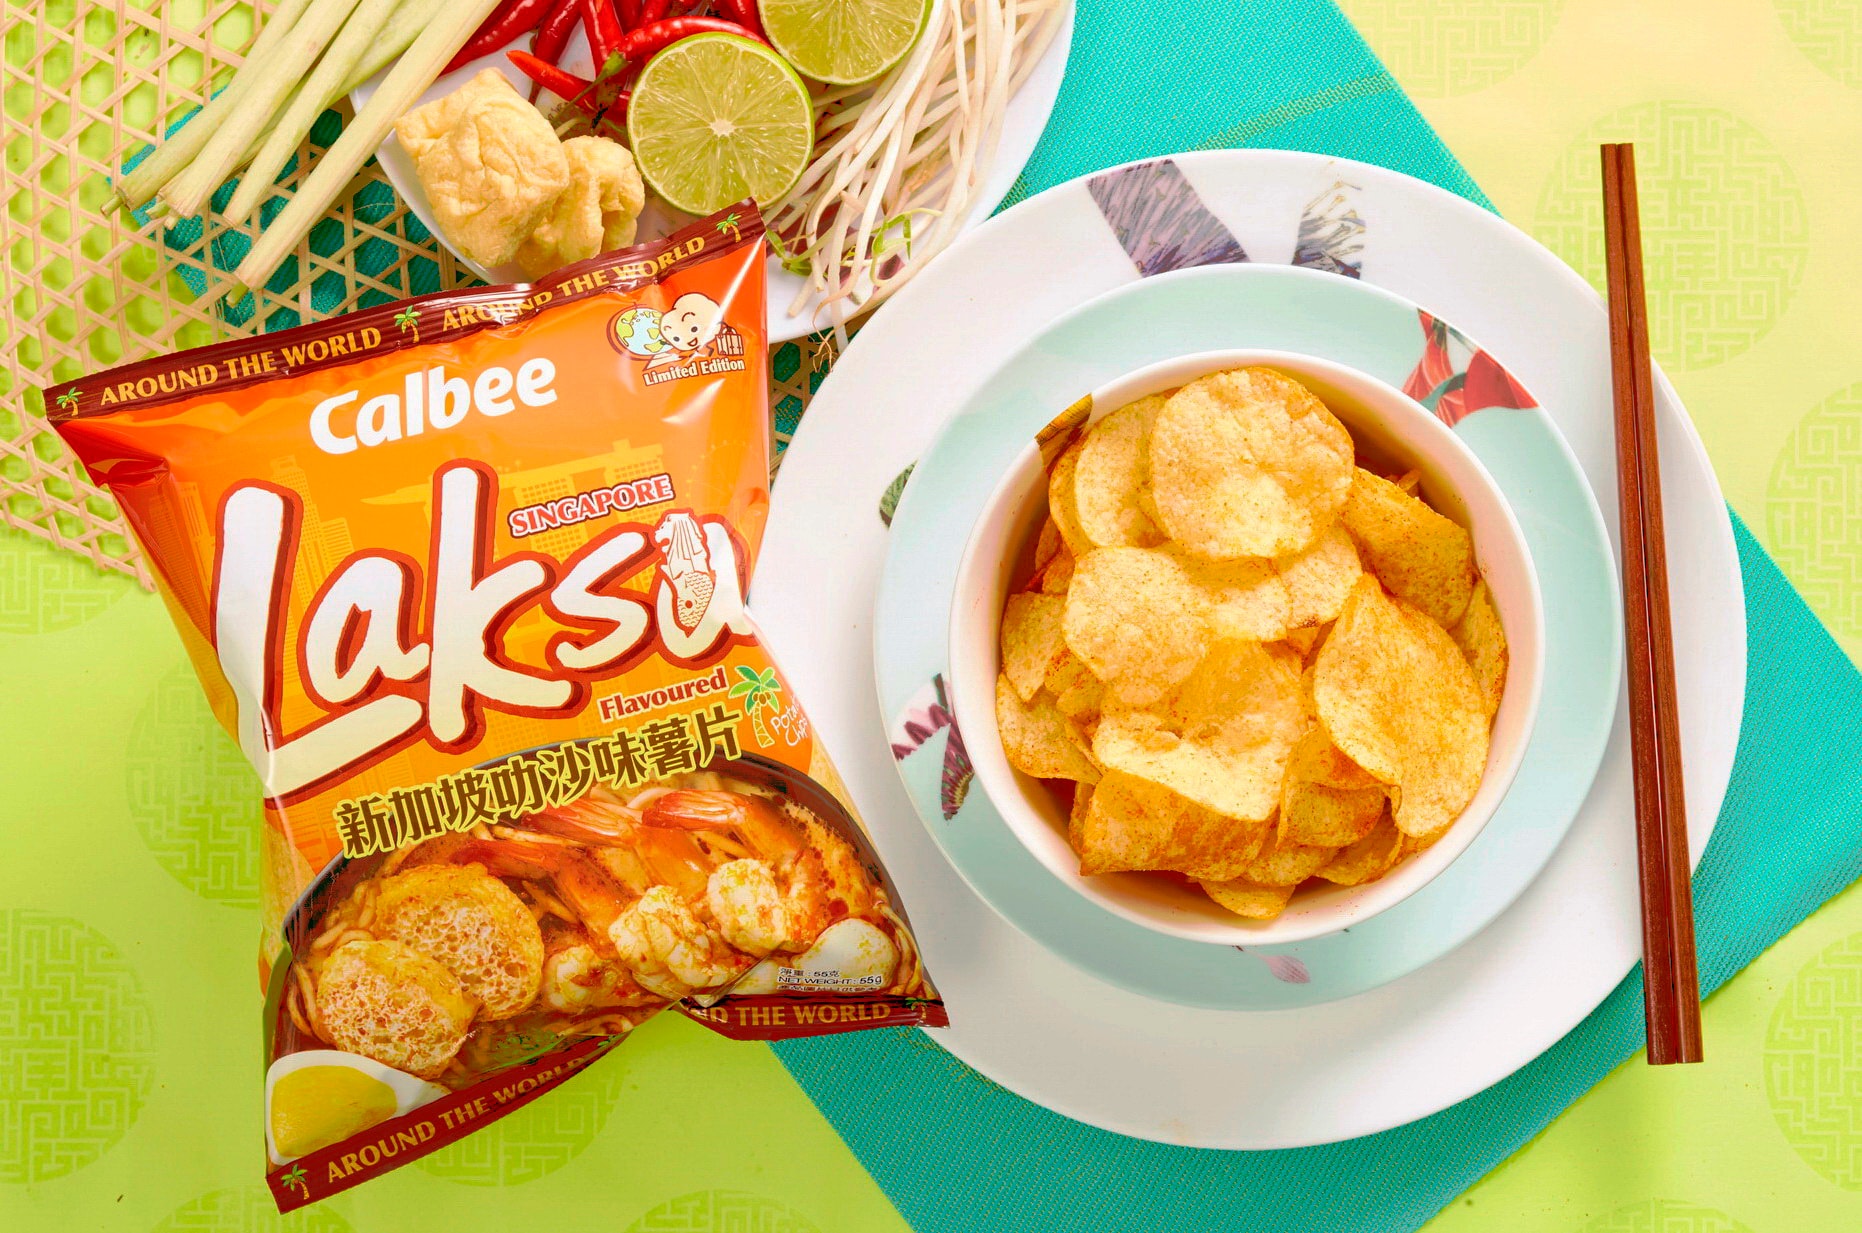 香港 Calbee 推出全新期間限定「新加坡叻沙味」薯片